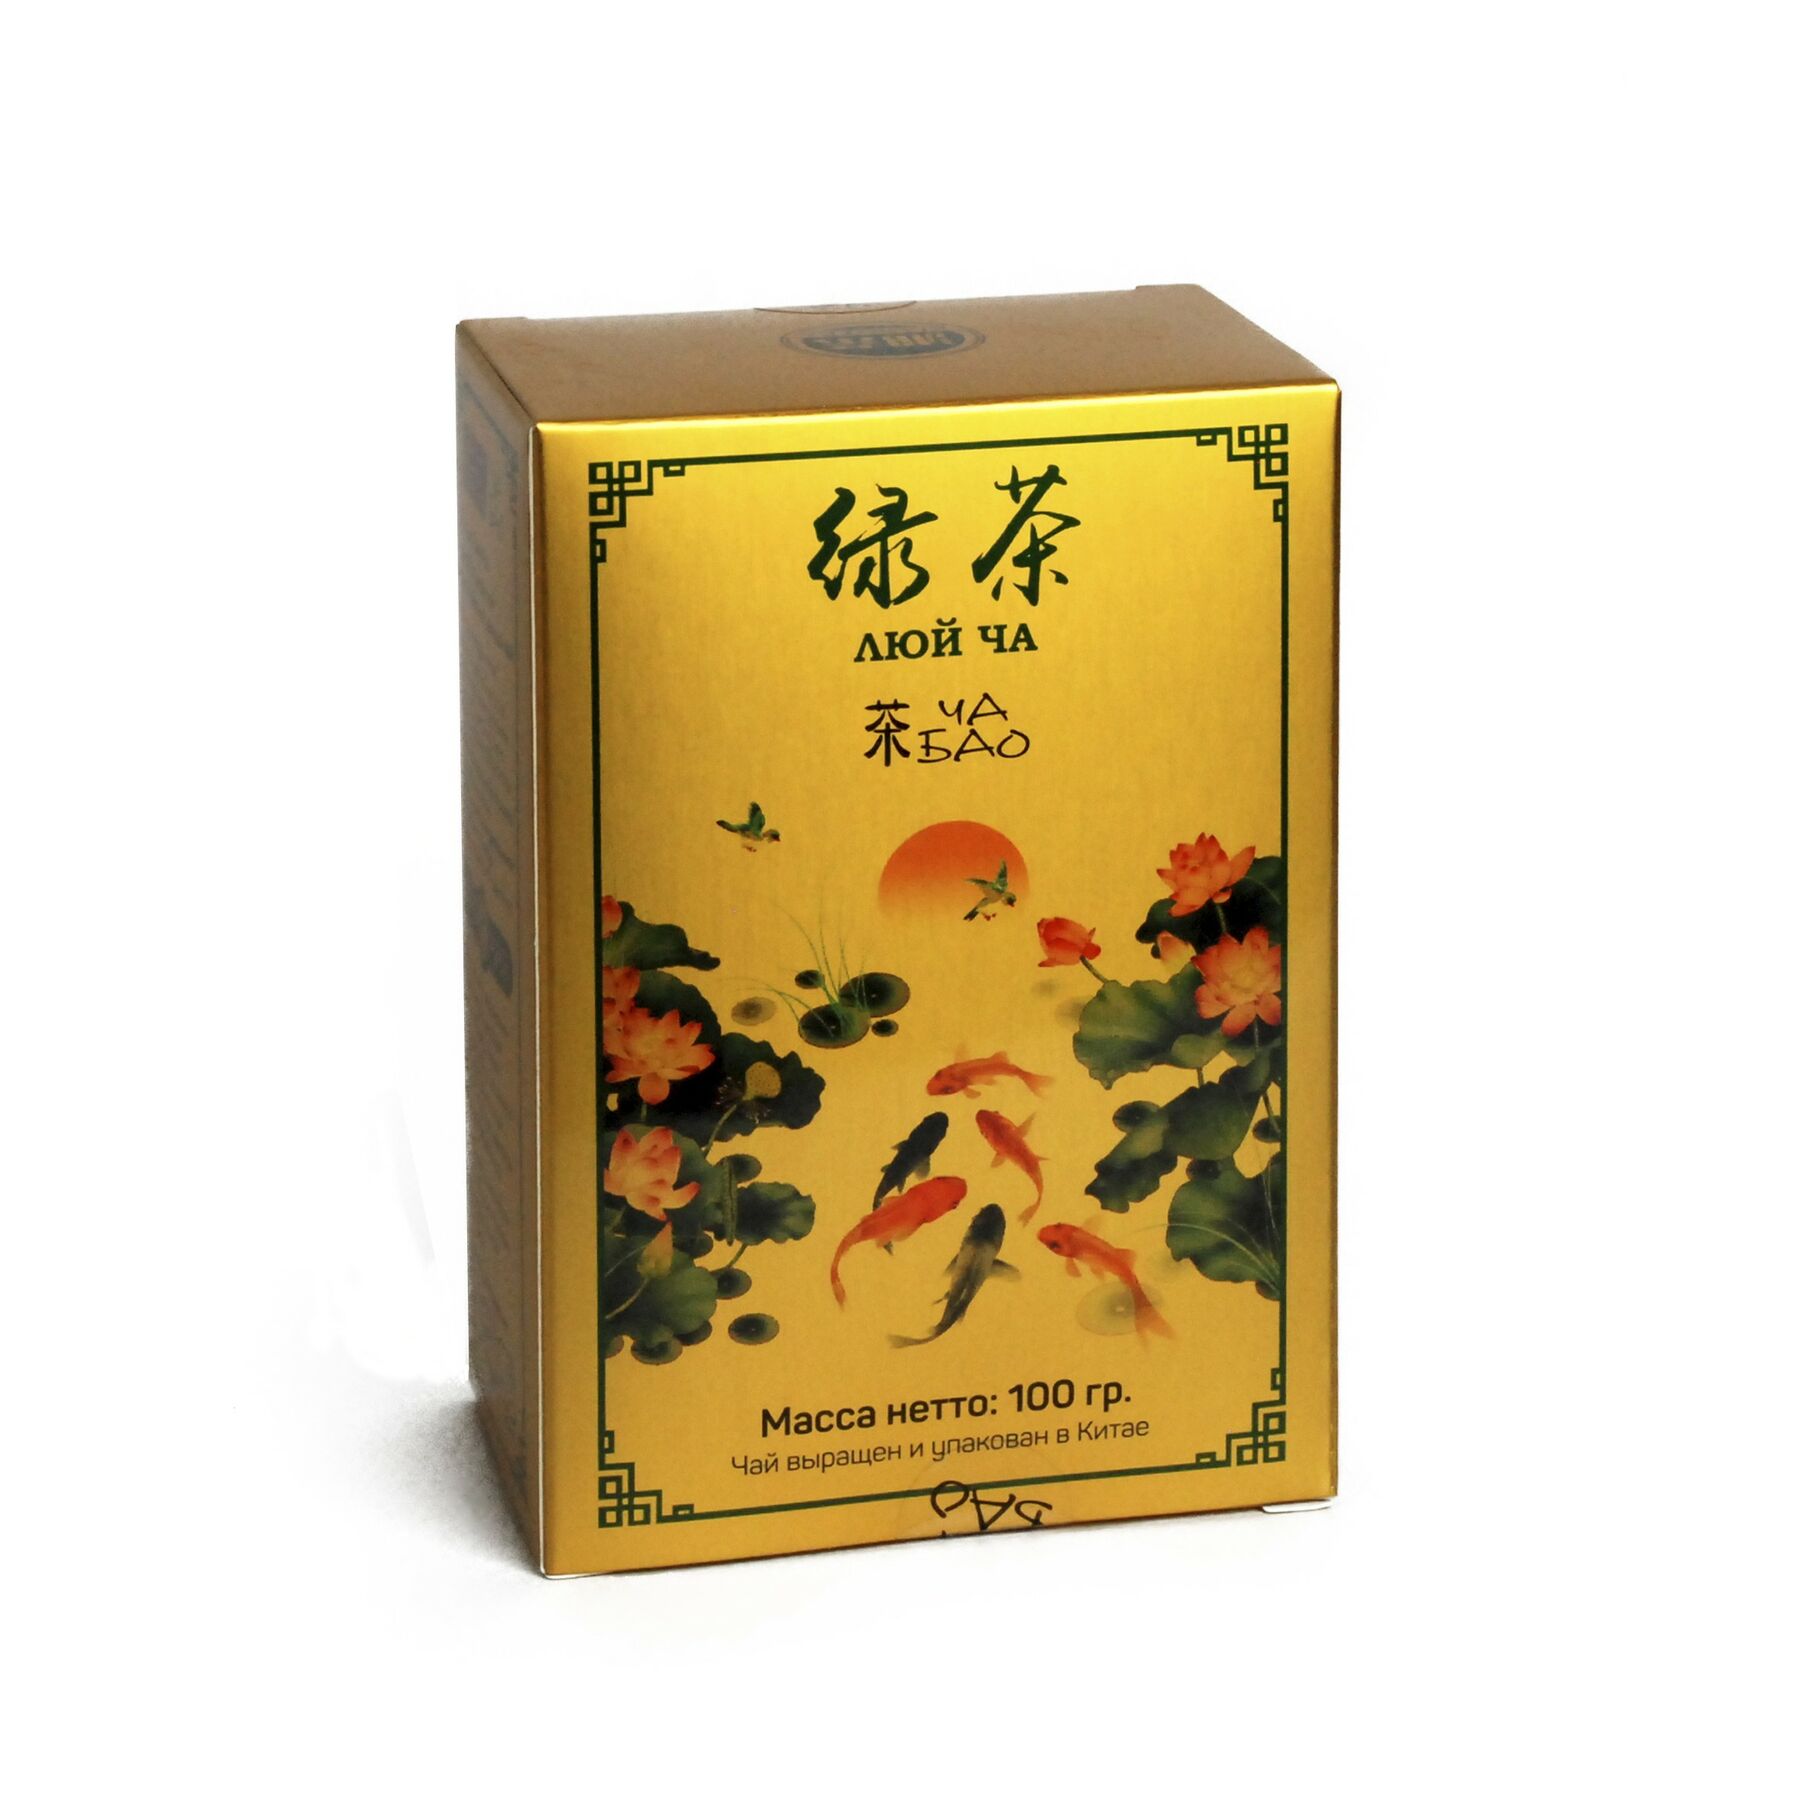 Чай "Ча Бао" Люй Ча, Китай, 100 гр.